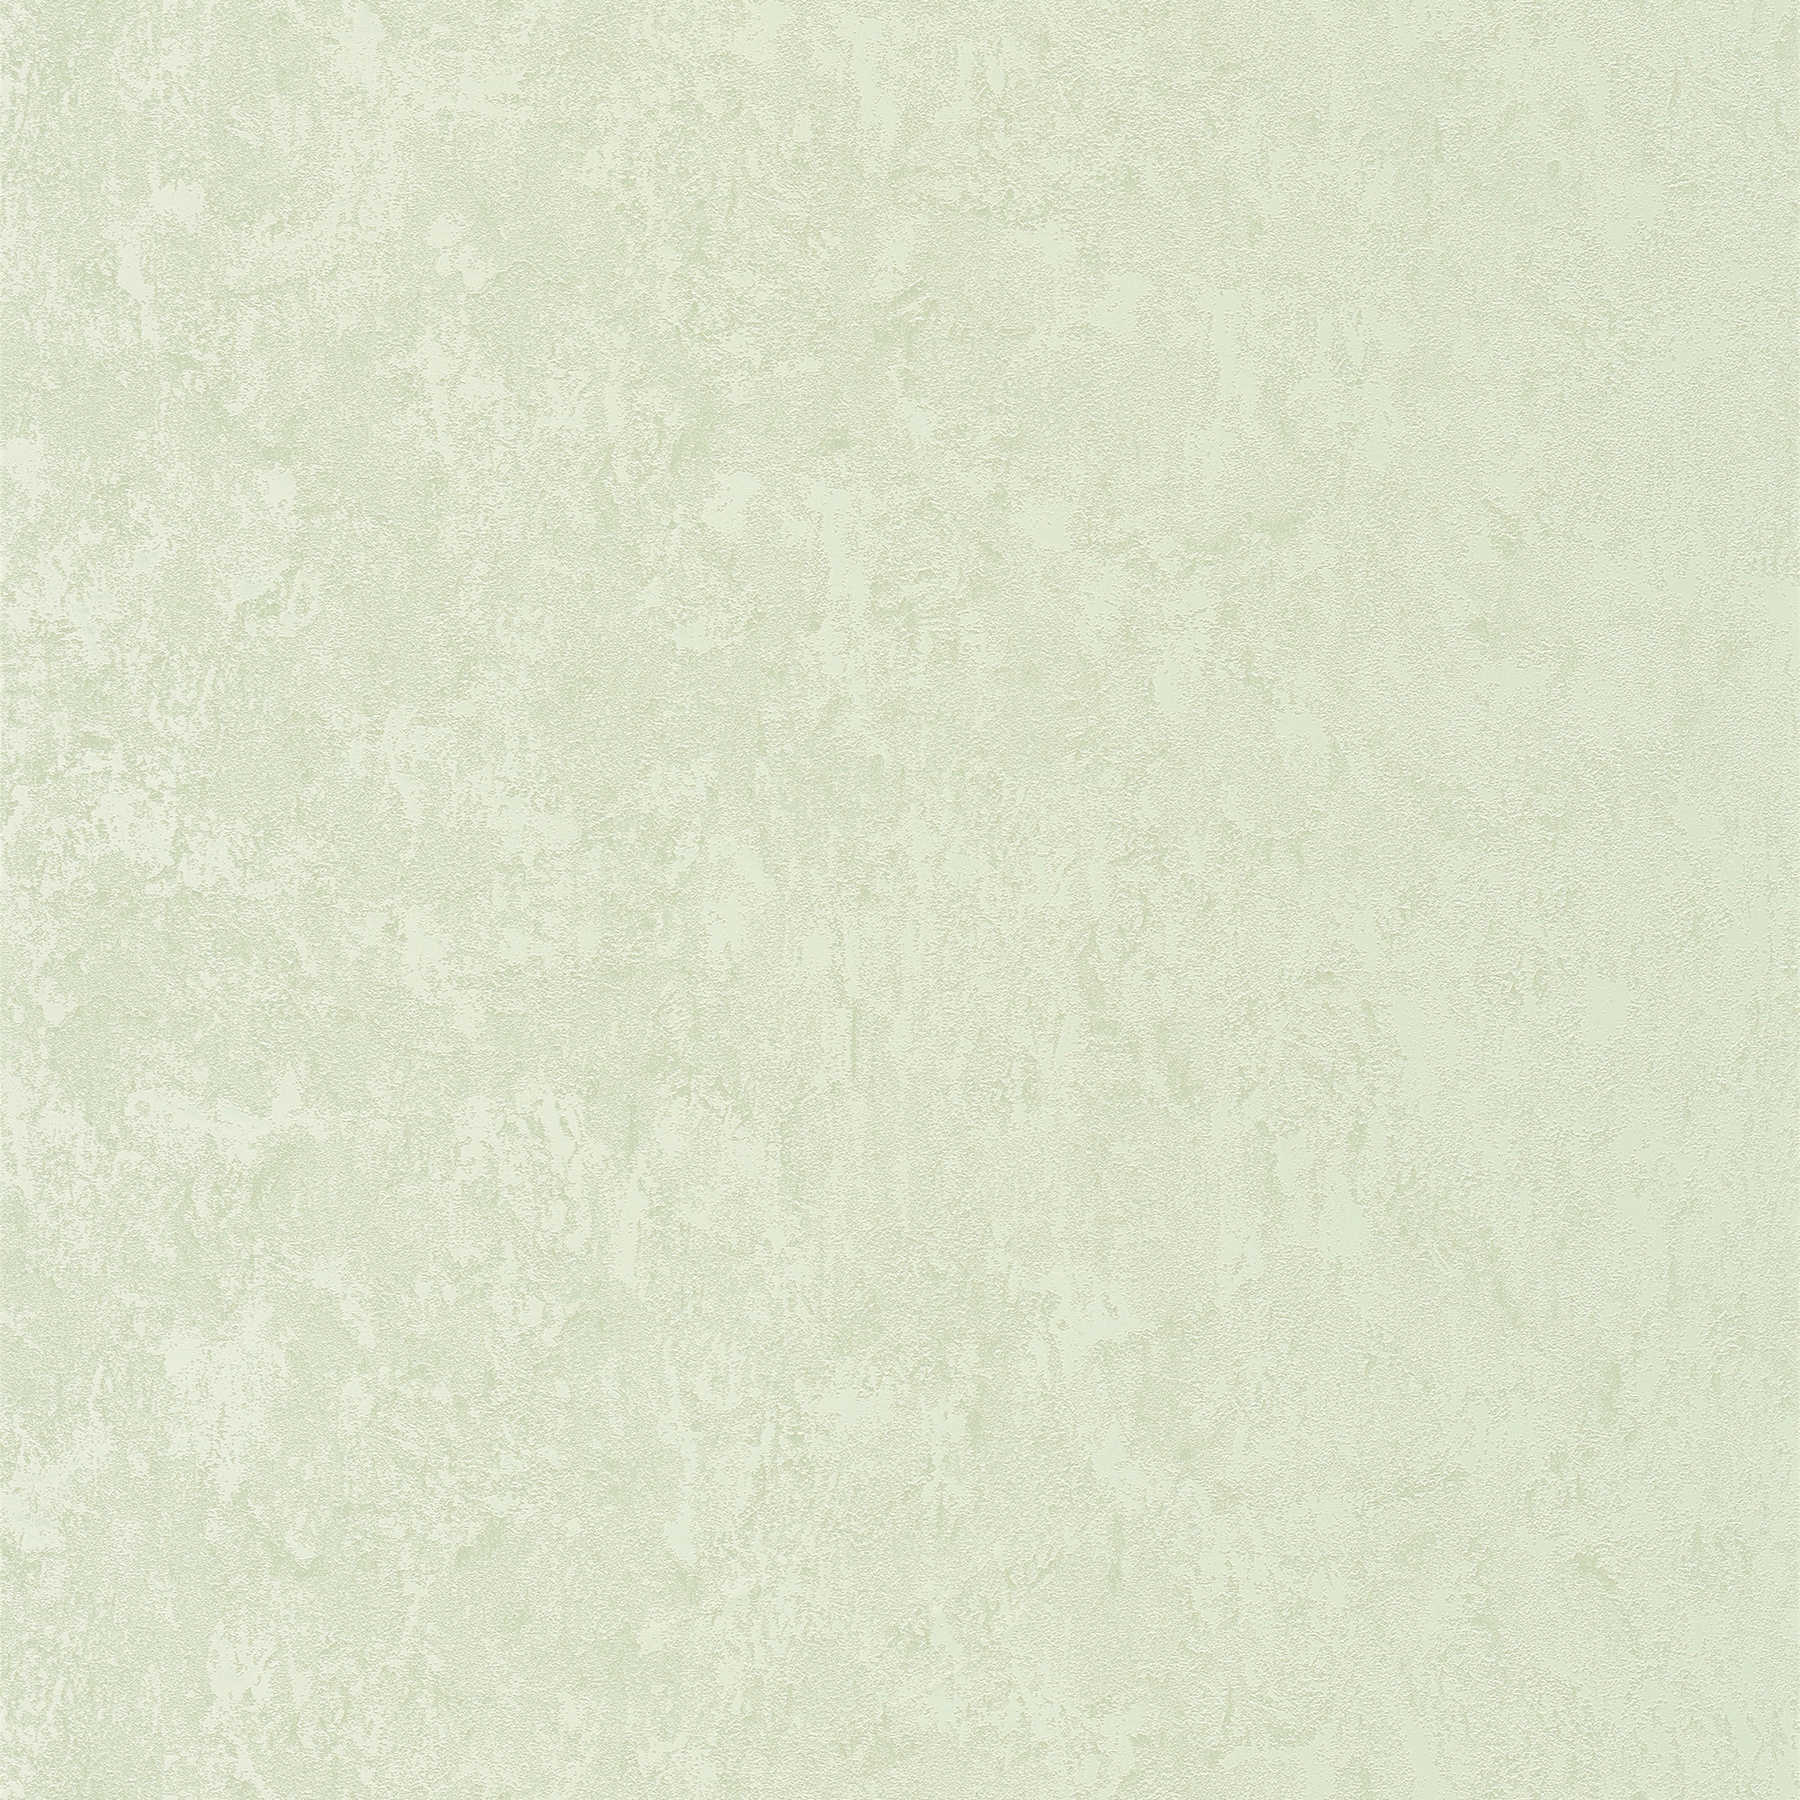 Carta da parati metallizzata verde chiaro lucida con struttura in rilievo
